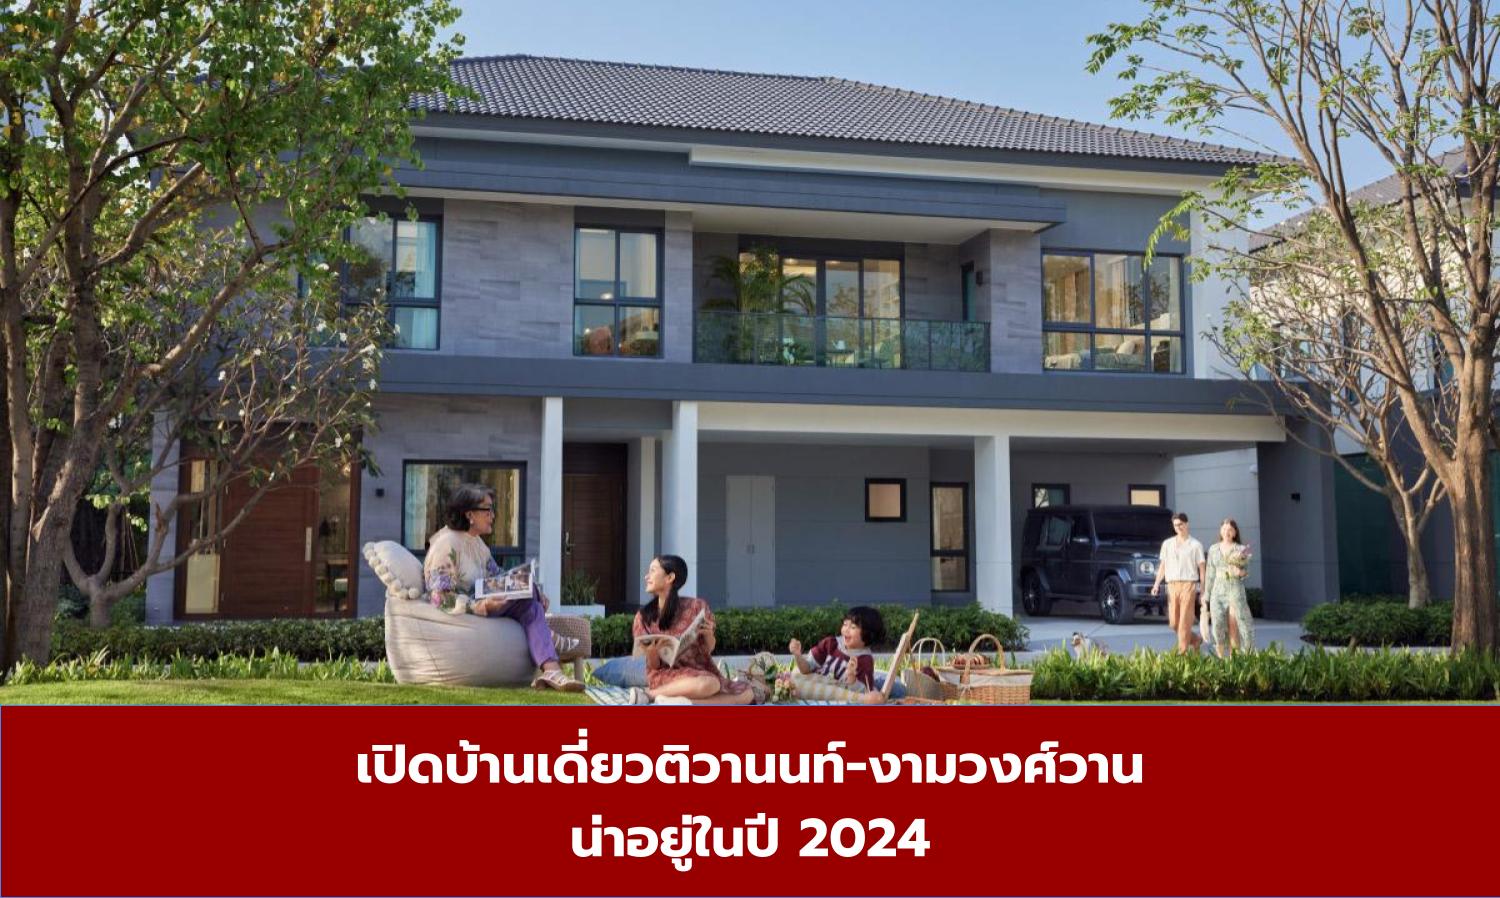 เปิดบ้านเดี่ยวติวานนท์-งามวงศ์วาน น่าอยู่ในปี 2024